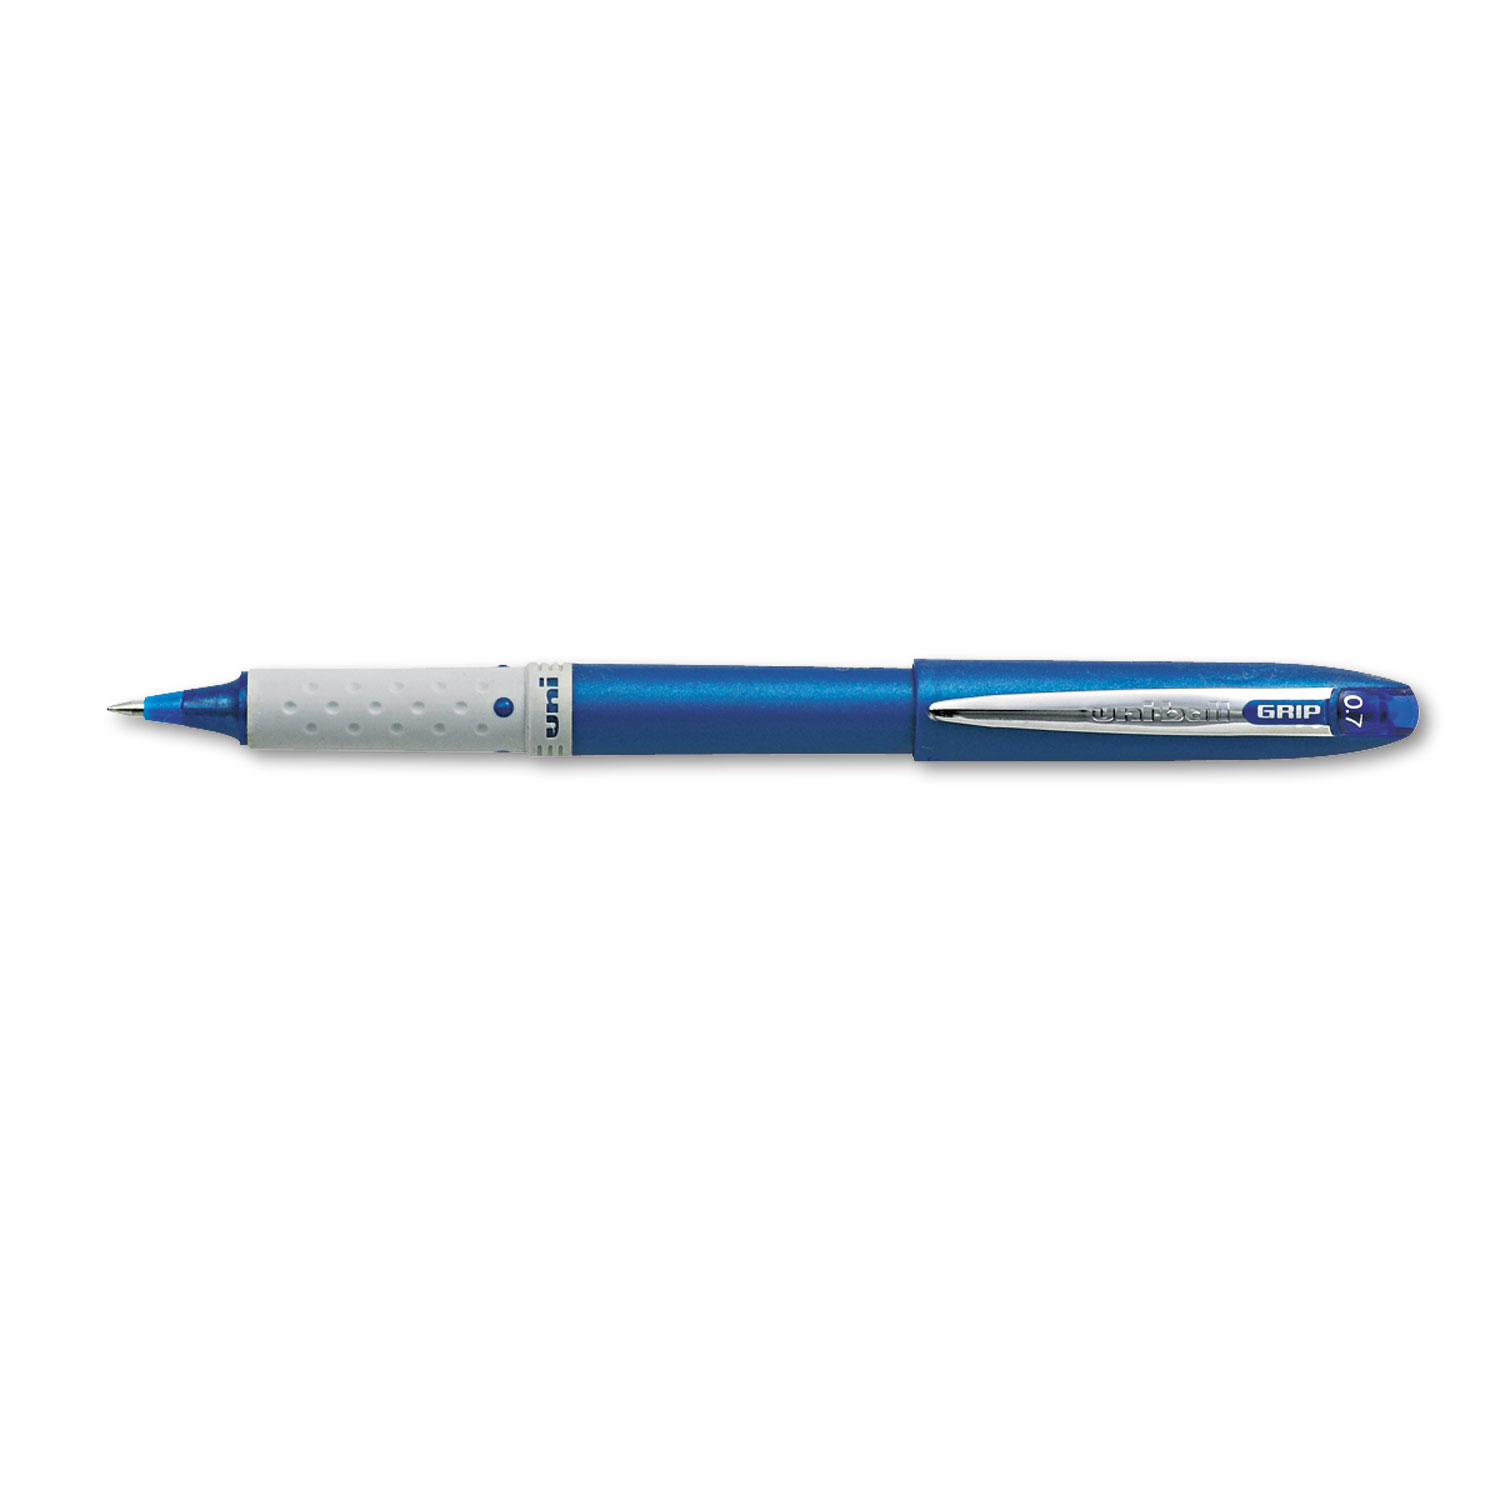  uni-ball 60709 Grip Stick Roller Ball Pen, Fine 0.7mm, Blue Ink/Barrel, Dozen (UBC60709) 